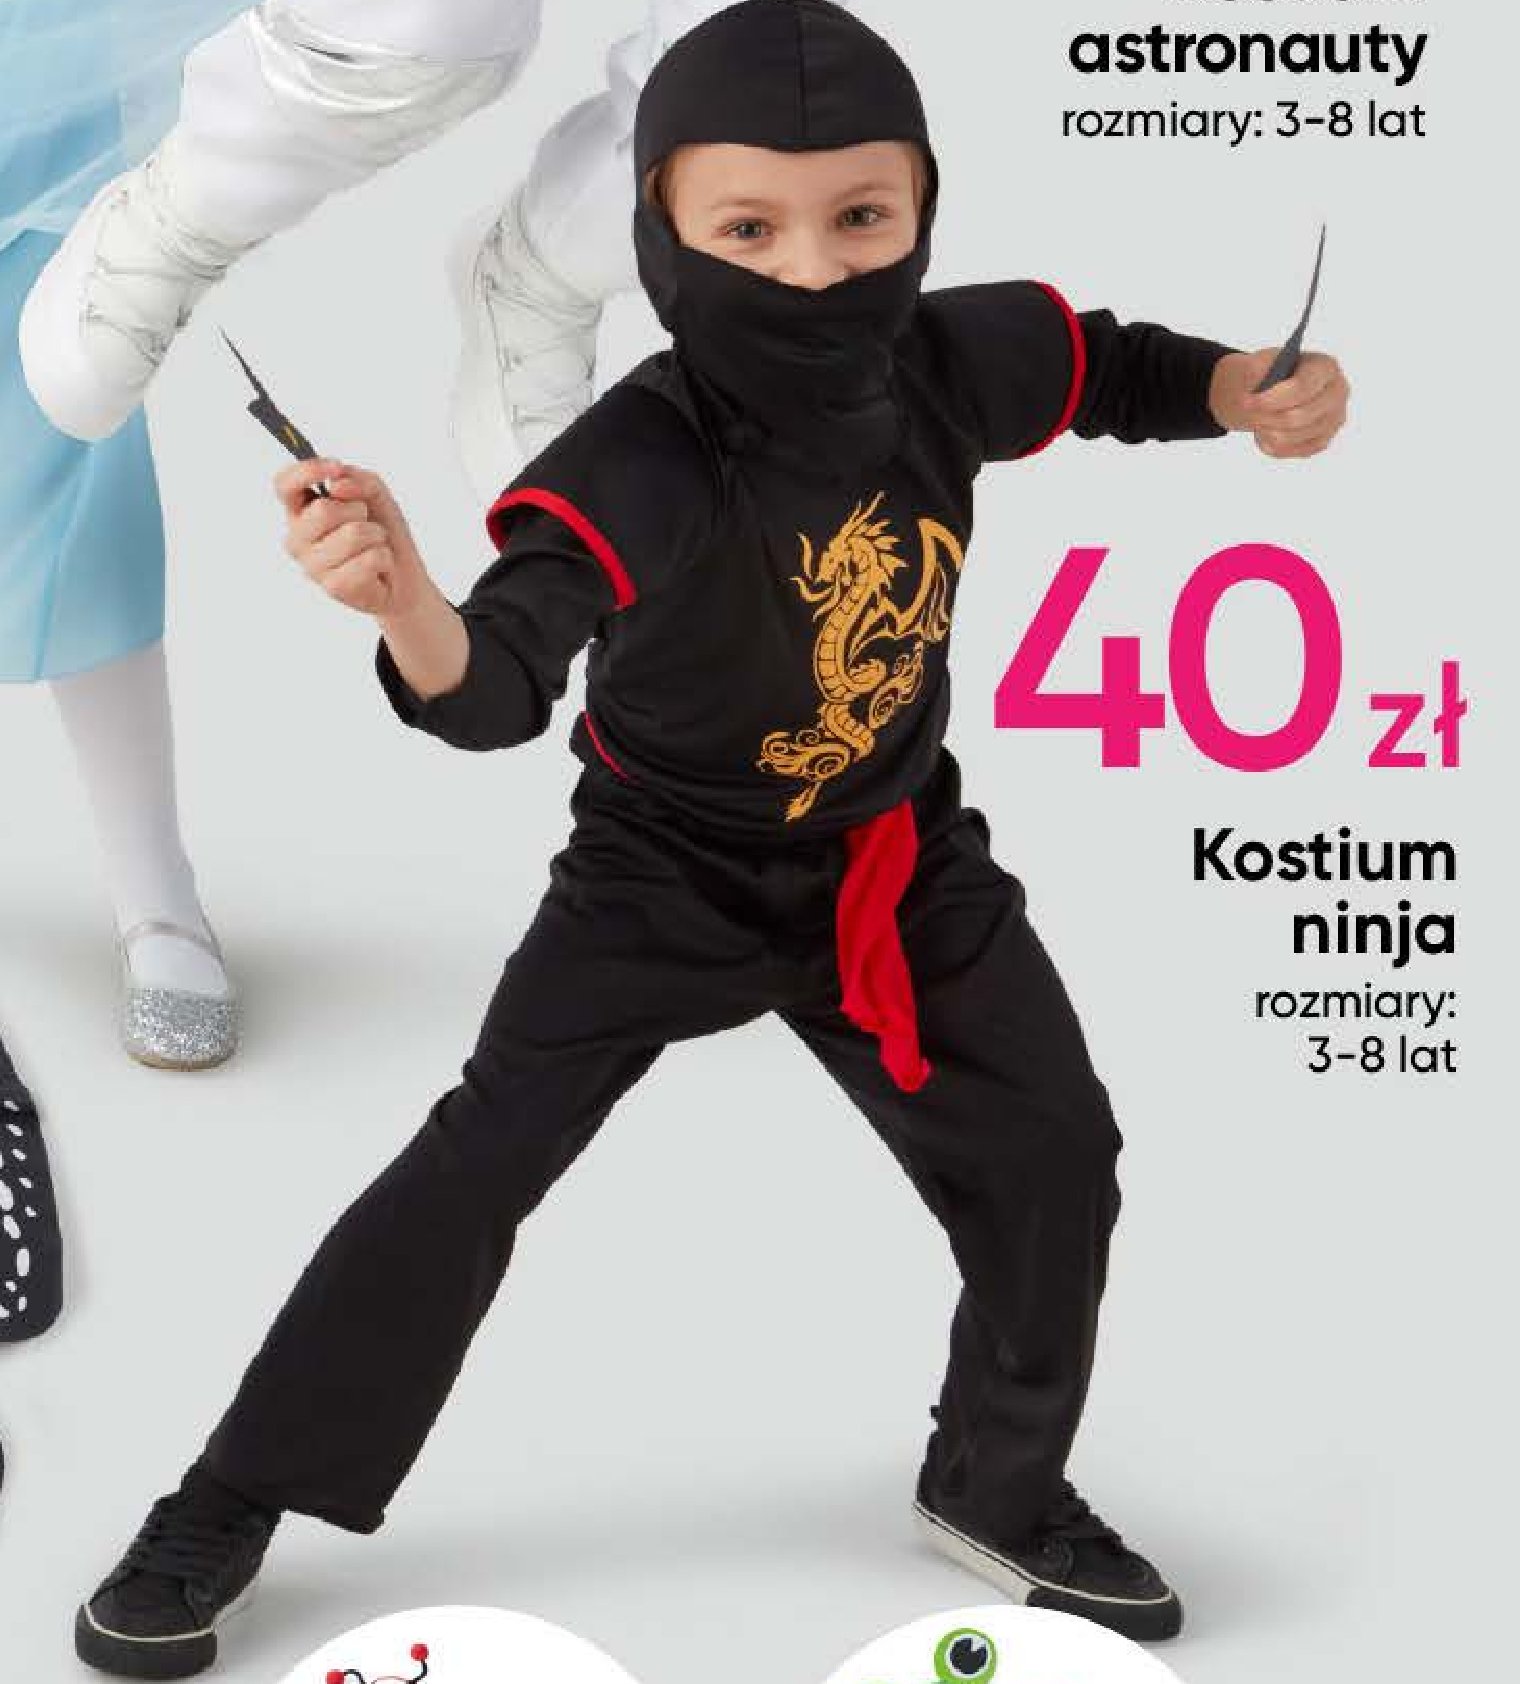 Kostium ninja promocja